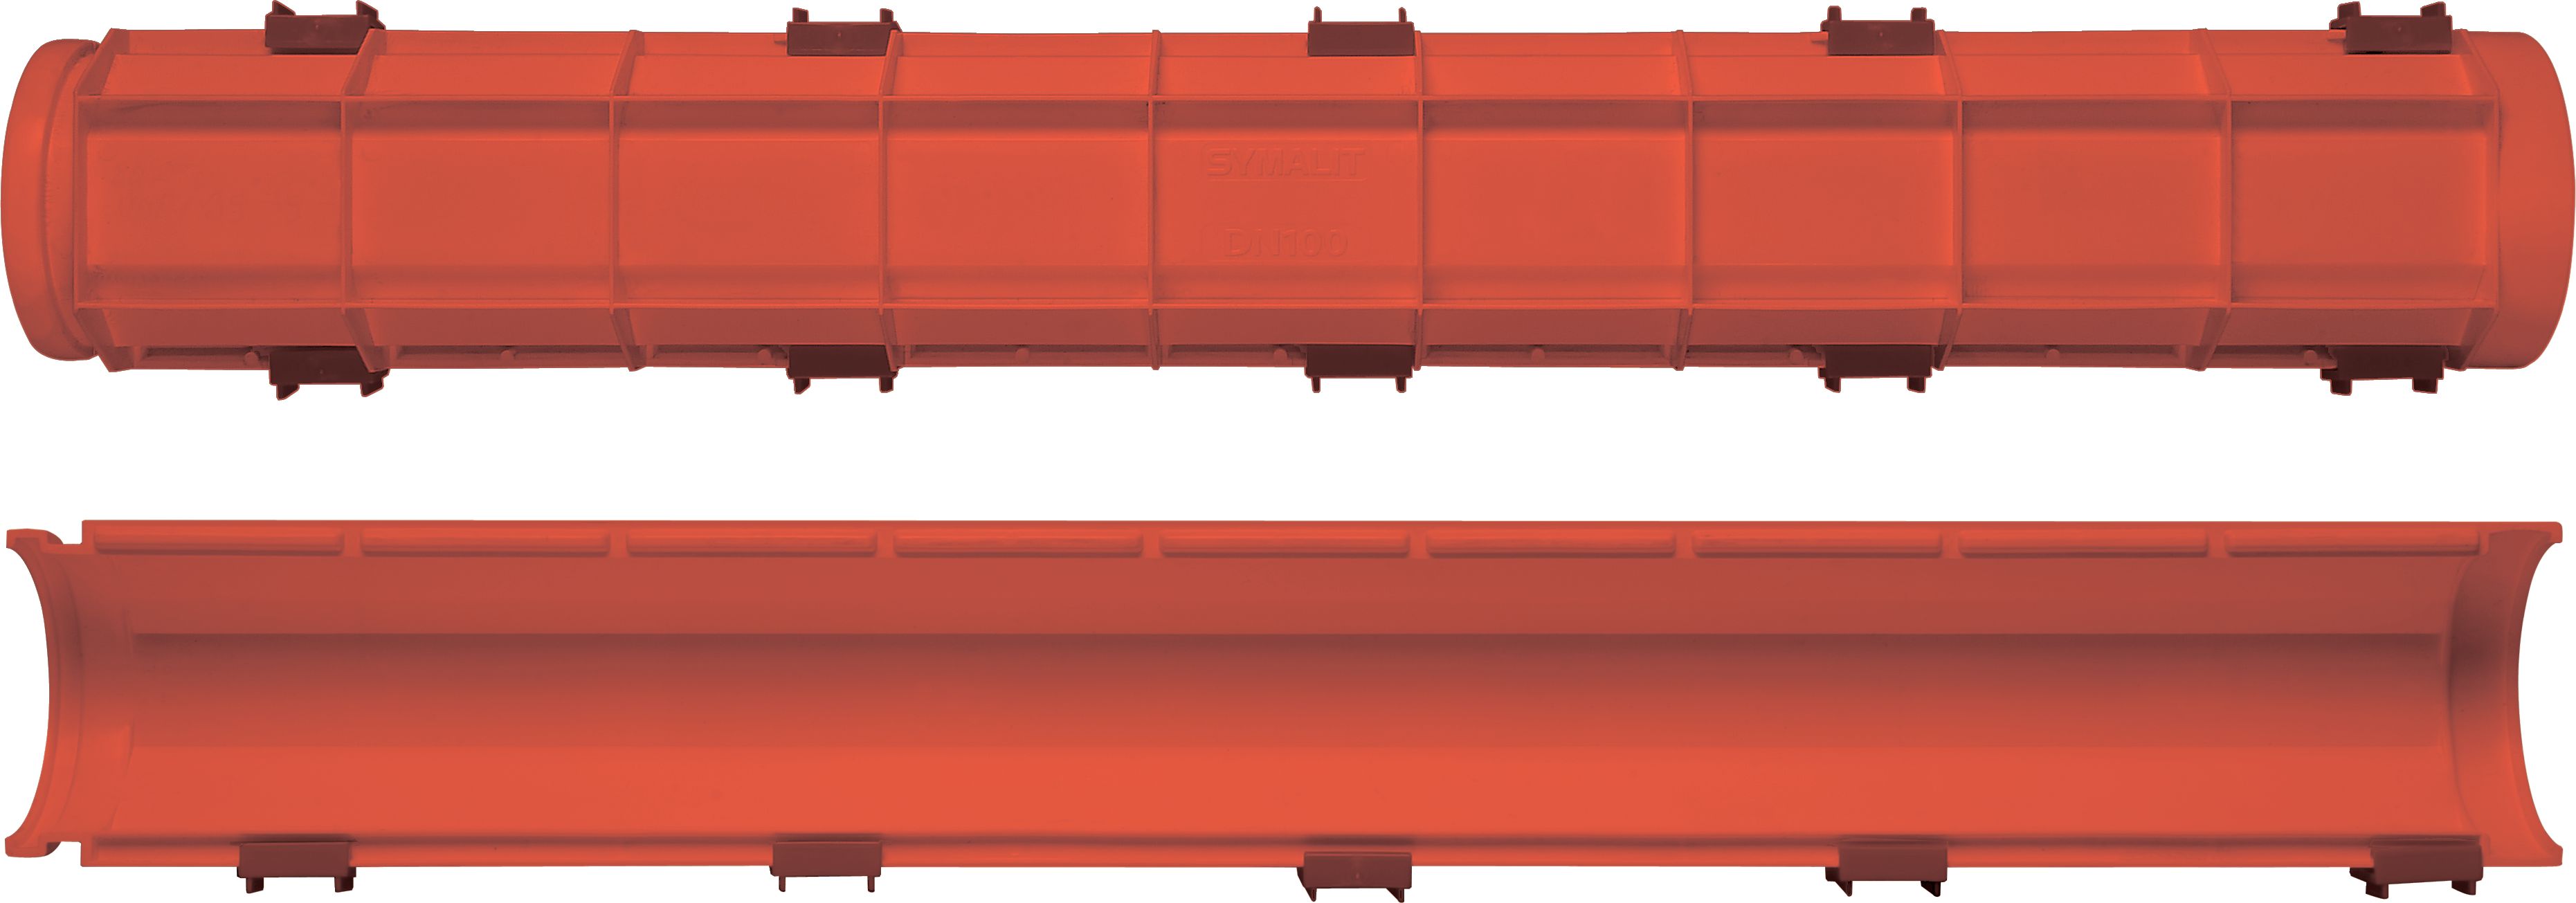 SYSPRO-Kabelhalbschalen HDPE rot NW: 100mm L:1m inkl. 3 Verschlussklemmen - Kabelschutz Formstücke netto